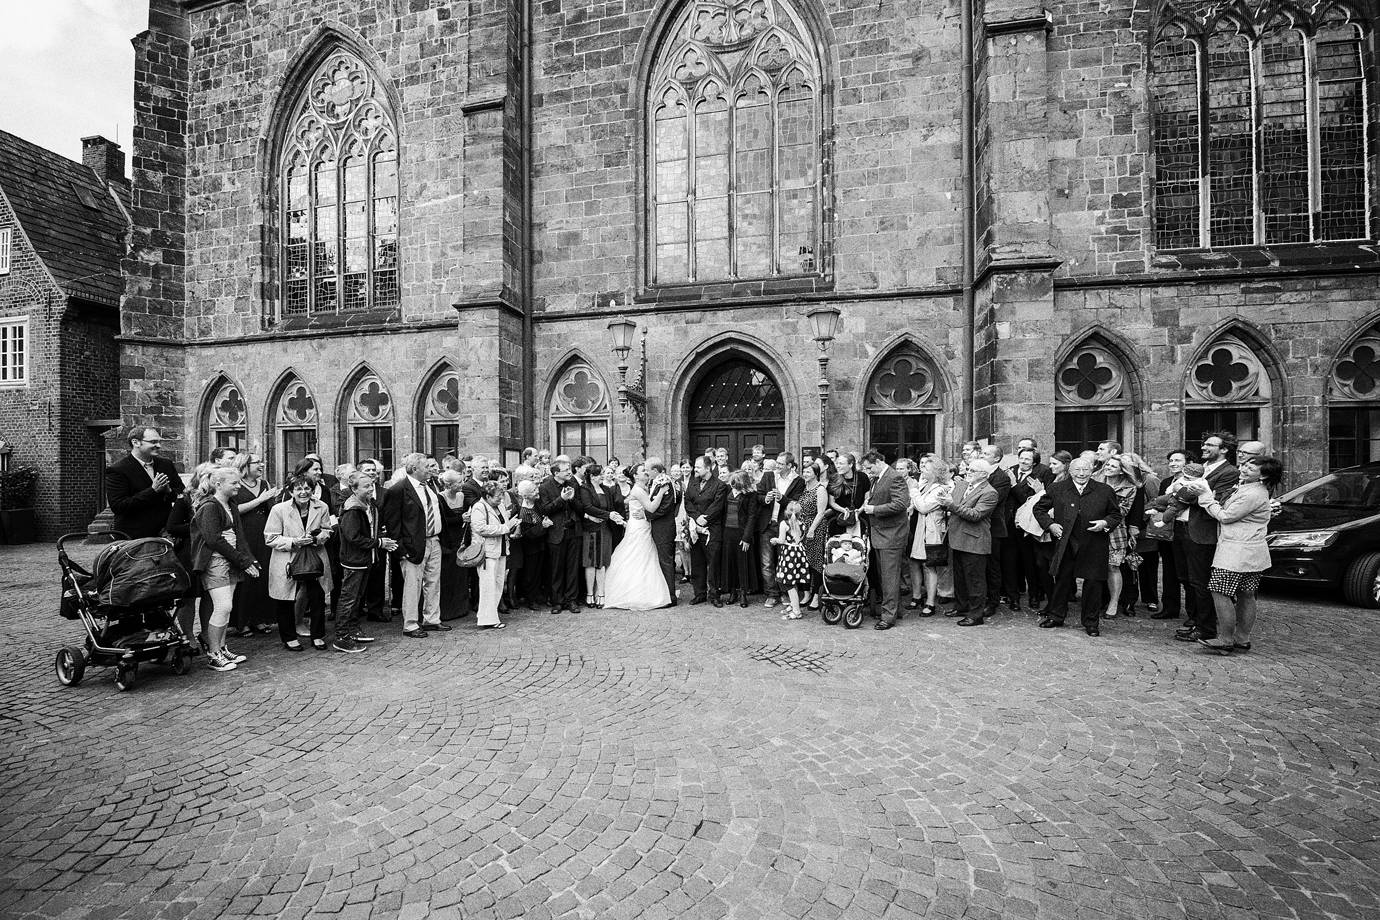 Hochzeitsfotograf Bremen